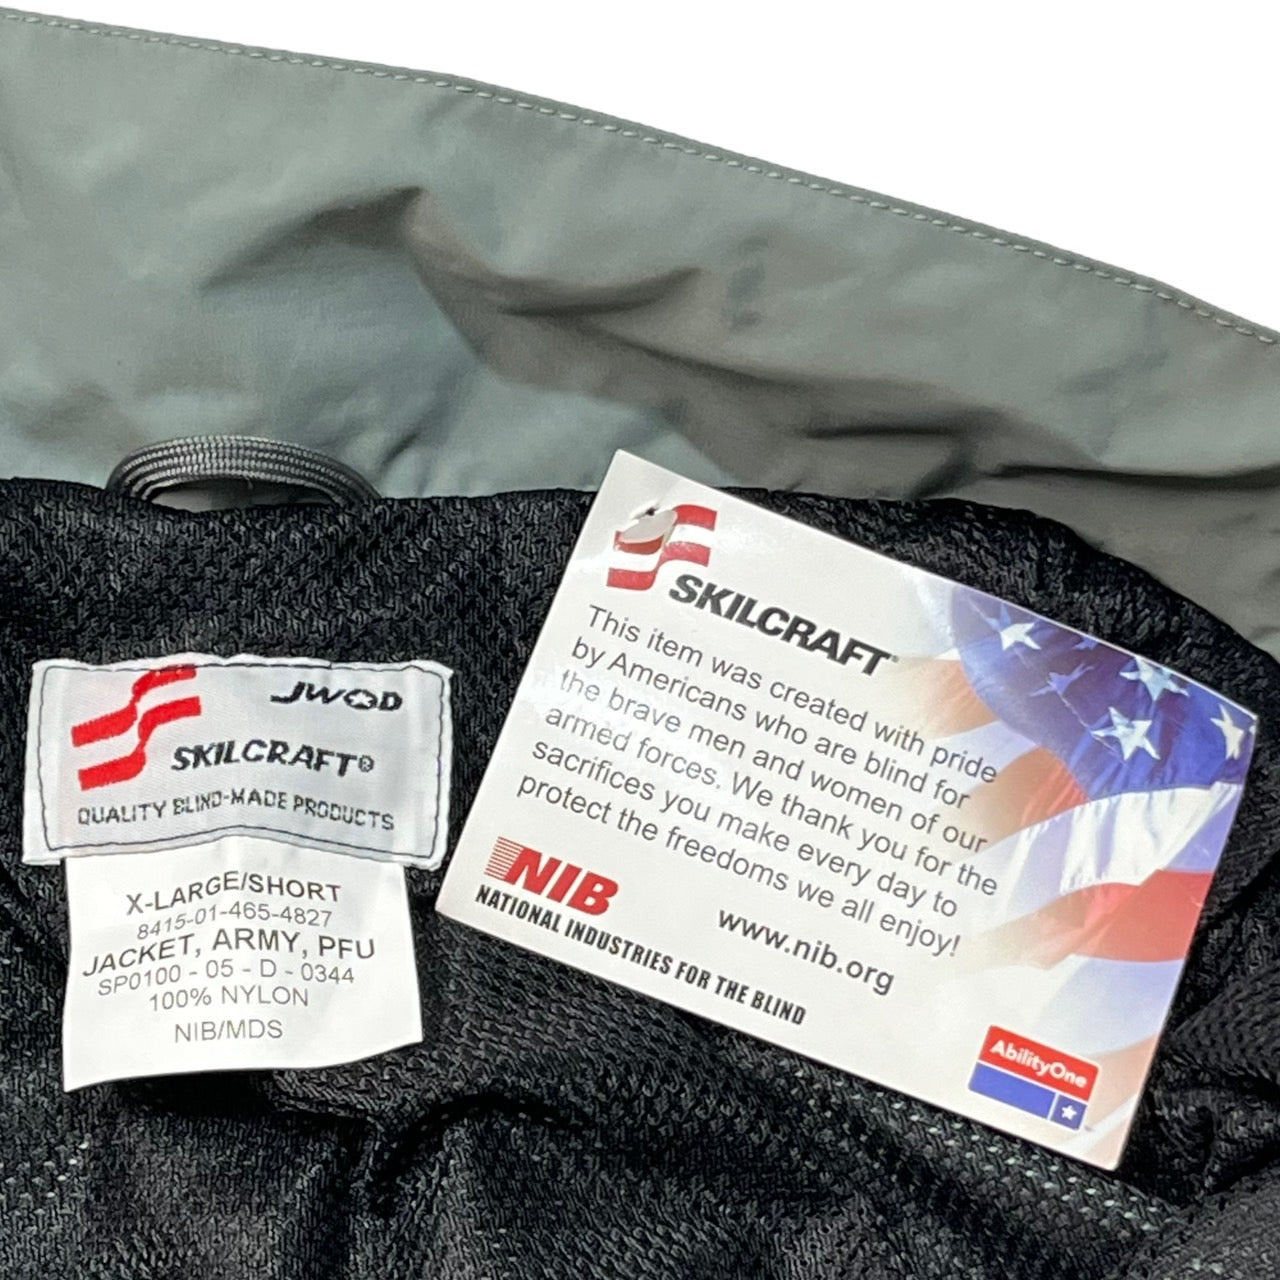 US AMRY(アメリカ軍) TRAINING JACKET/トレーニングジャケット/ナイロンジャケット 8415-01-465-4821 XL グレー